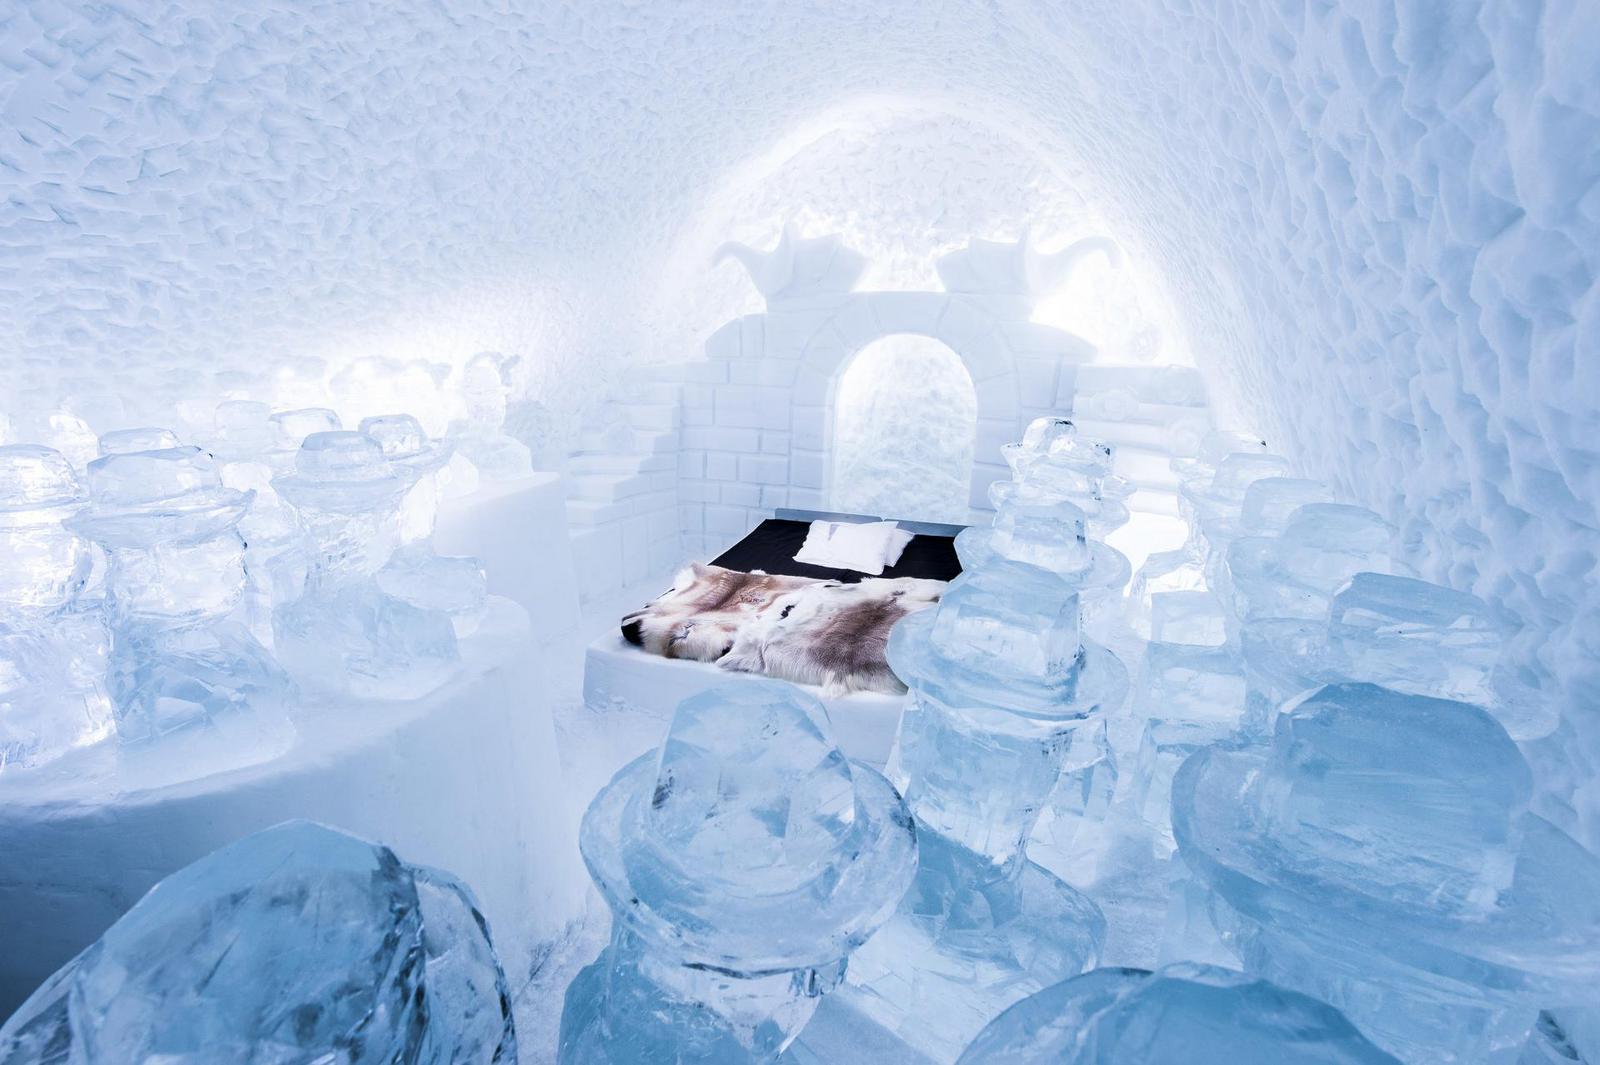 "Momos" bedroom suite with ice sculptures